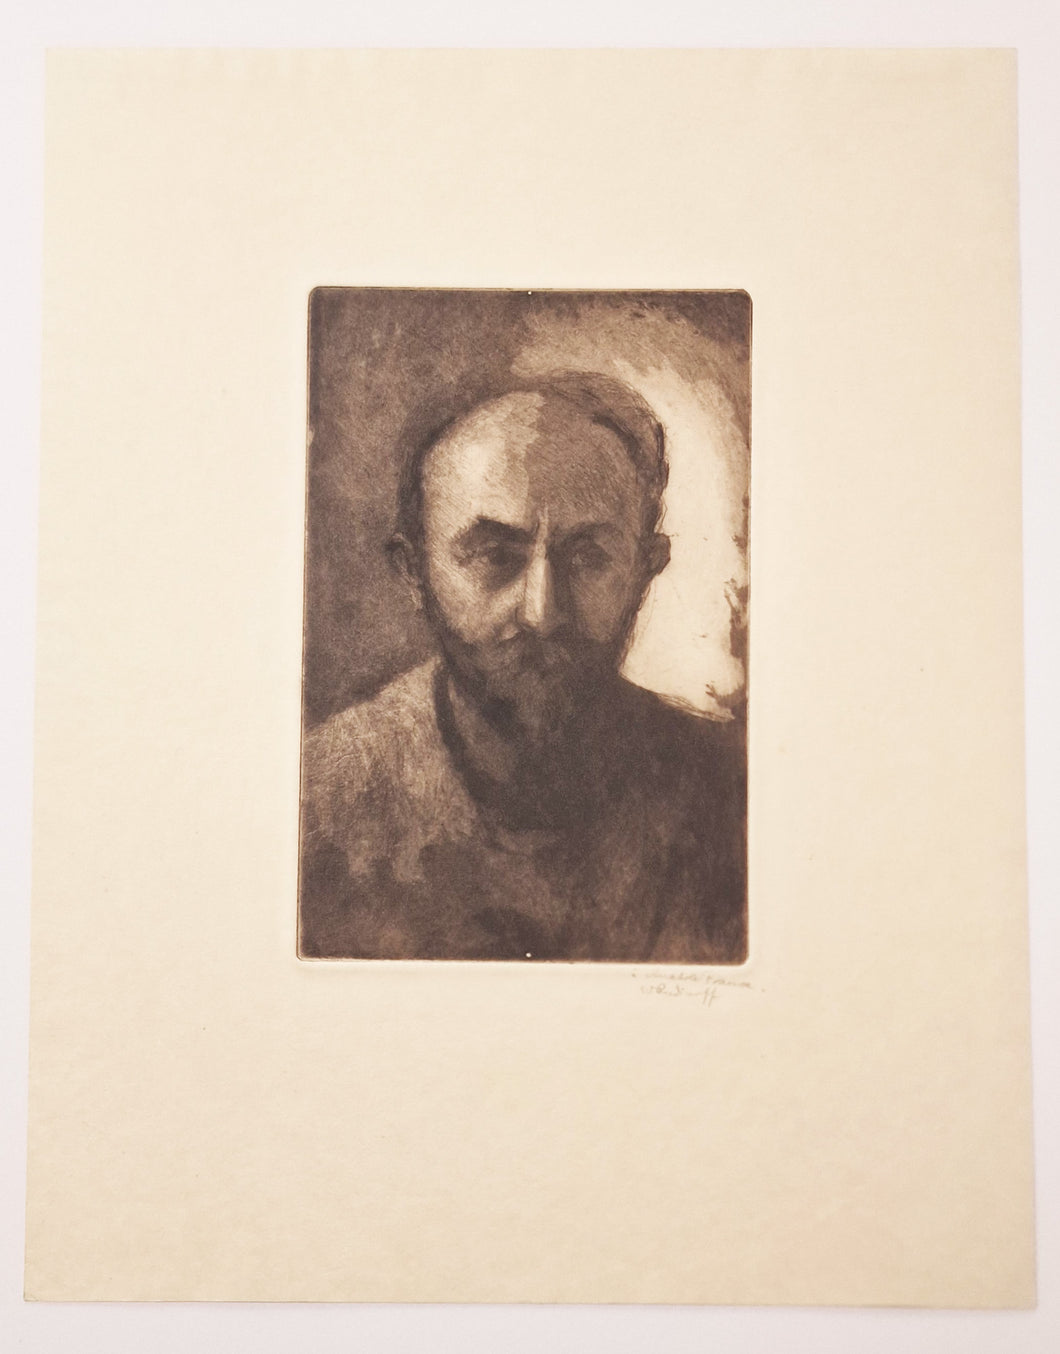 Autoportrait.  c.1900.